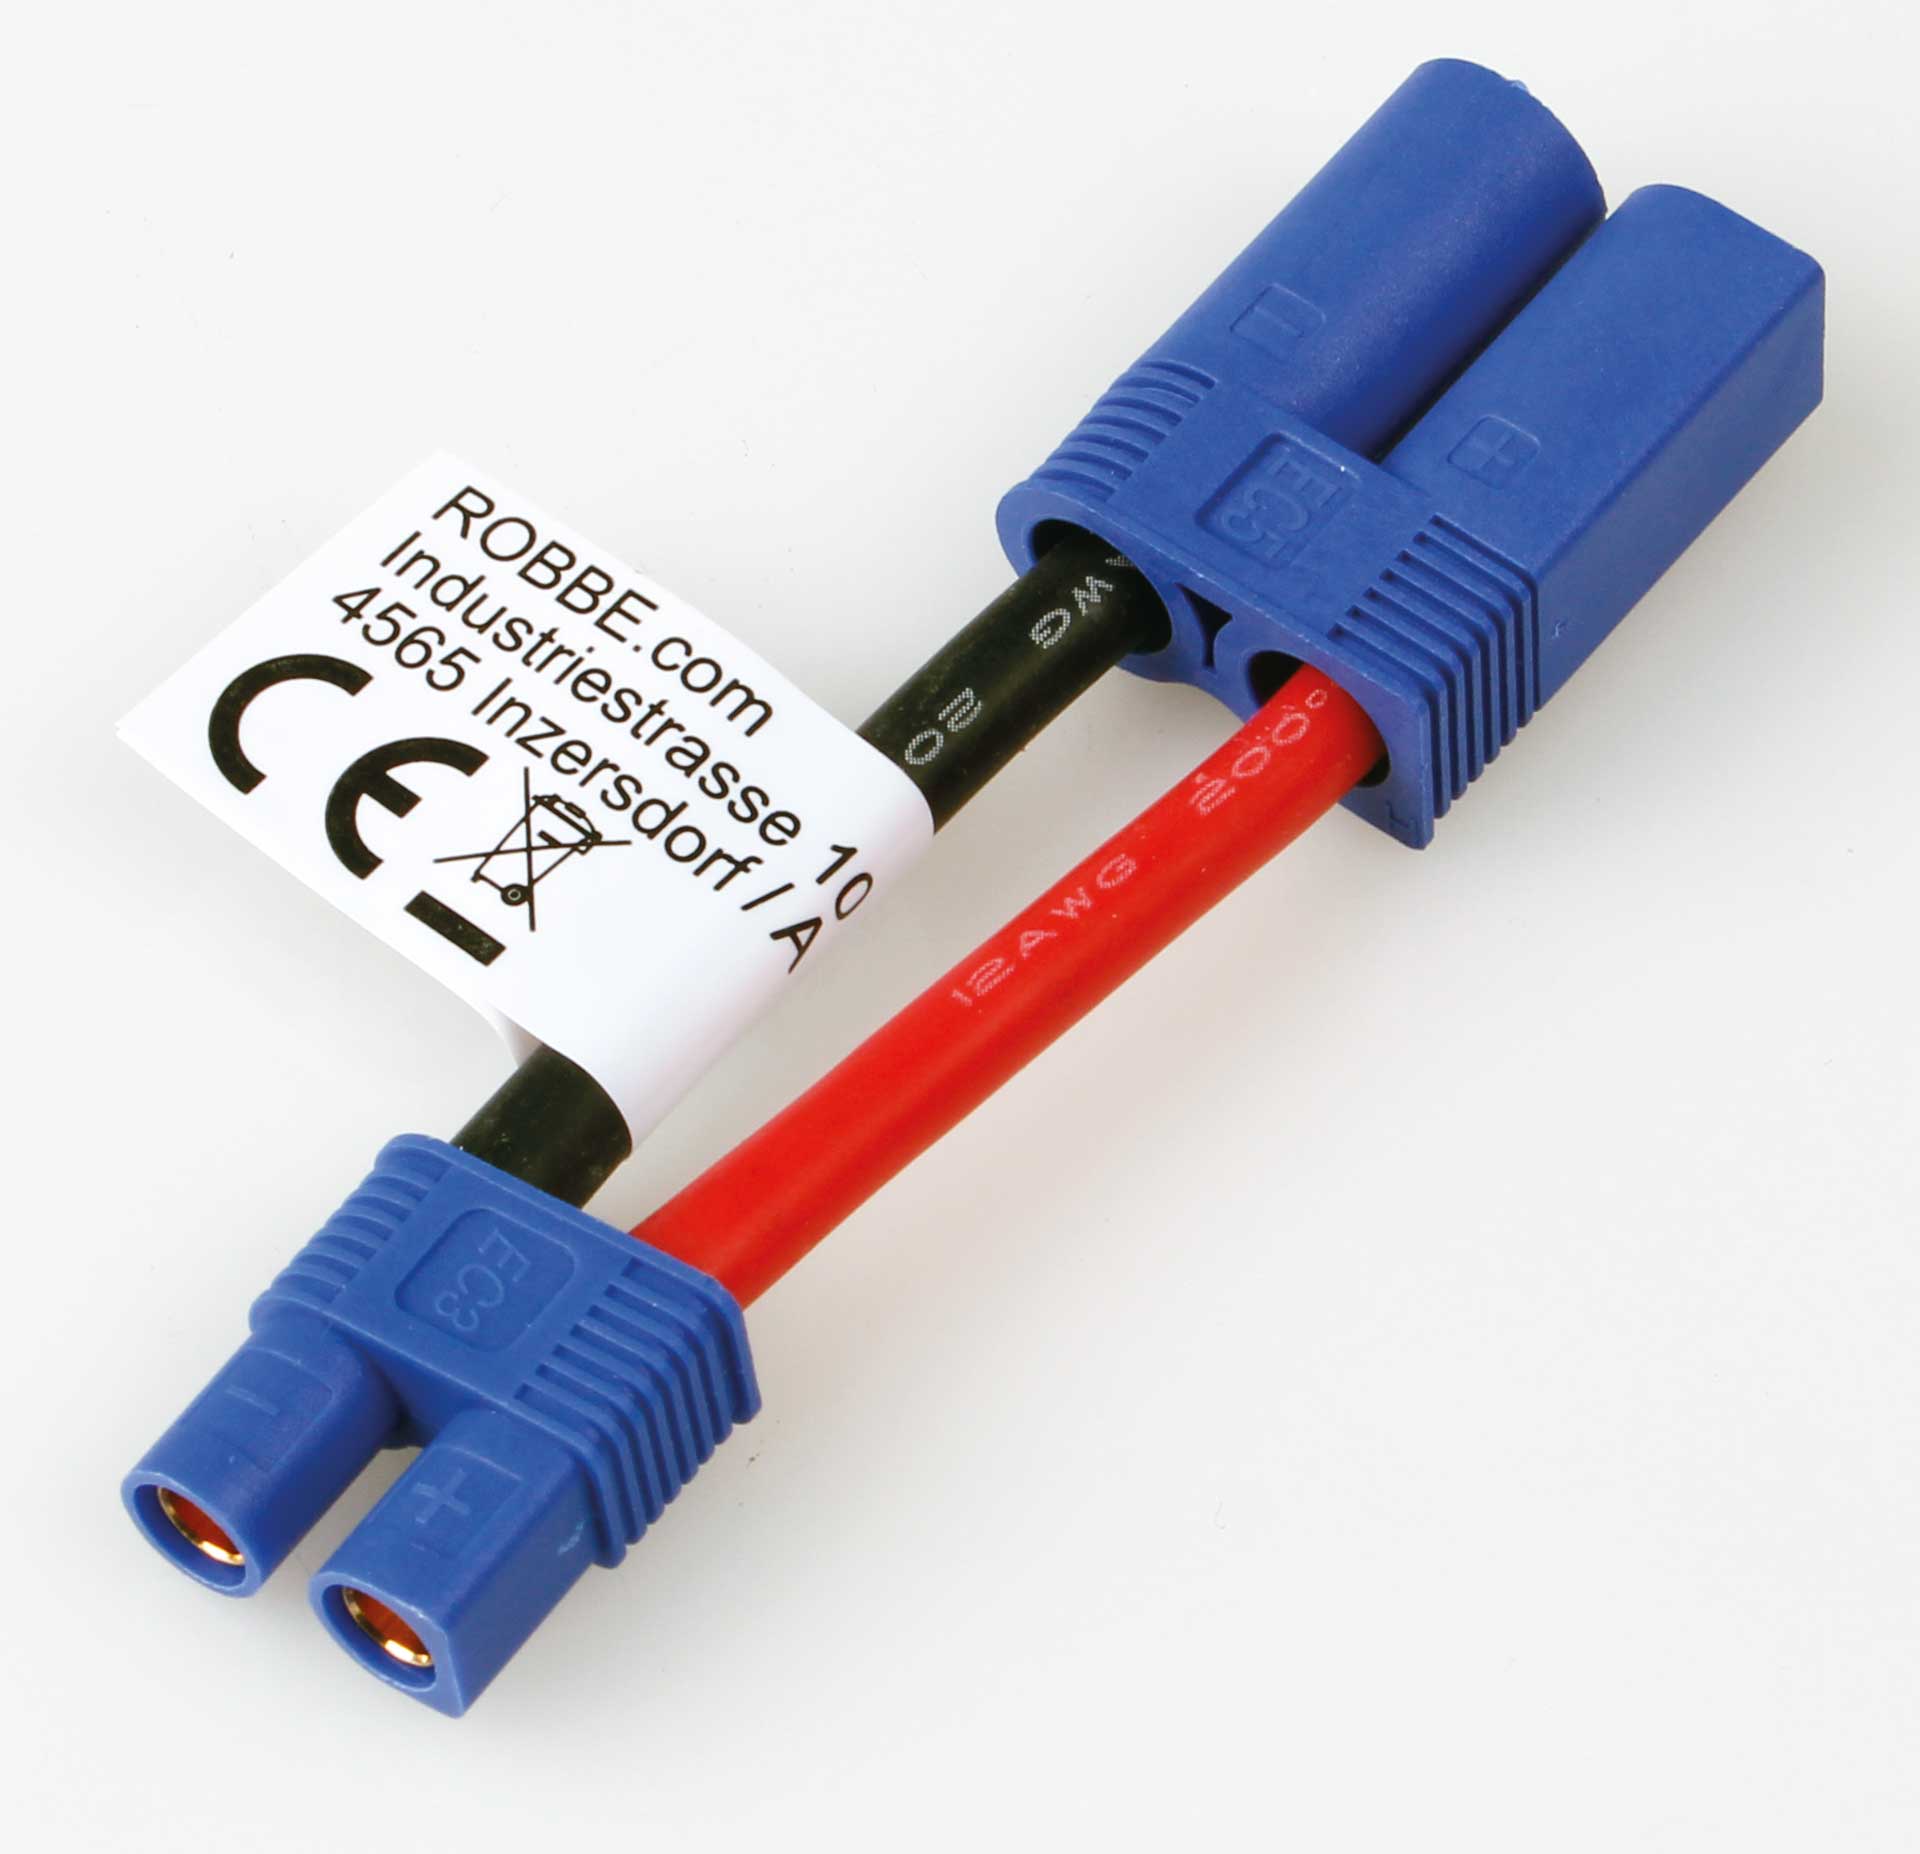 Robbe Modellsport Câble adaptateur  EC-3 Femelle  sur  EC-5 Male  30mm Longueur de câble  12AWG 1Pièce